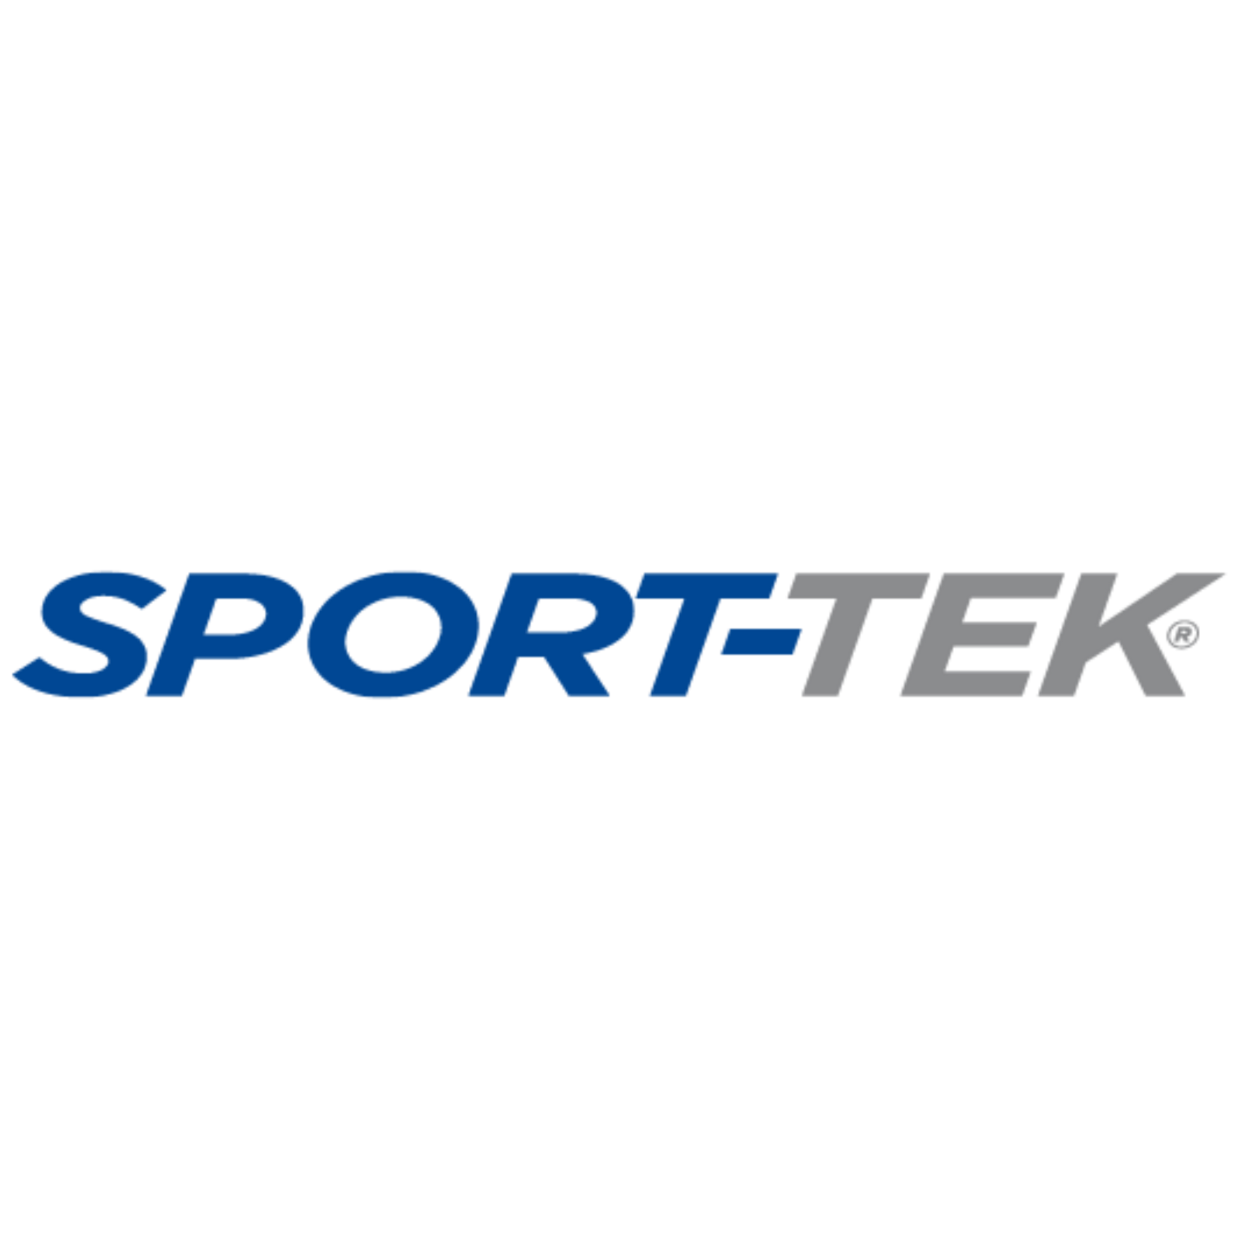 Sport-tek-logo